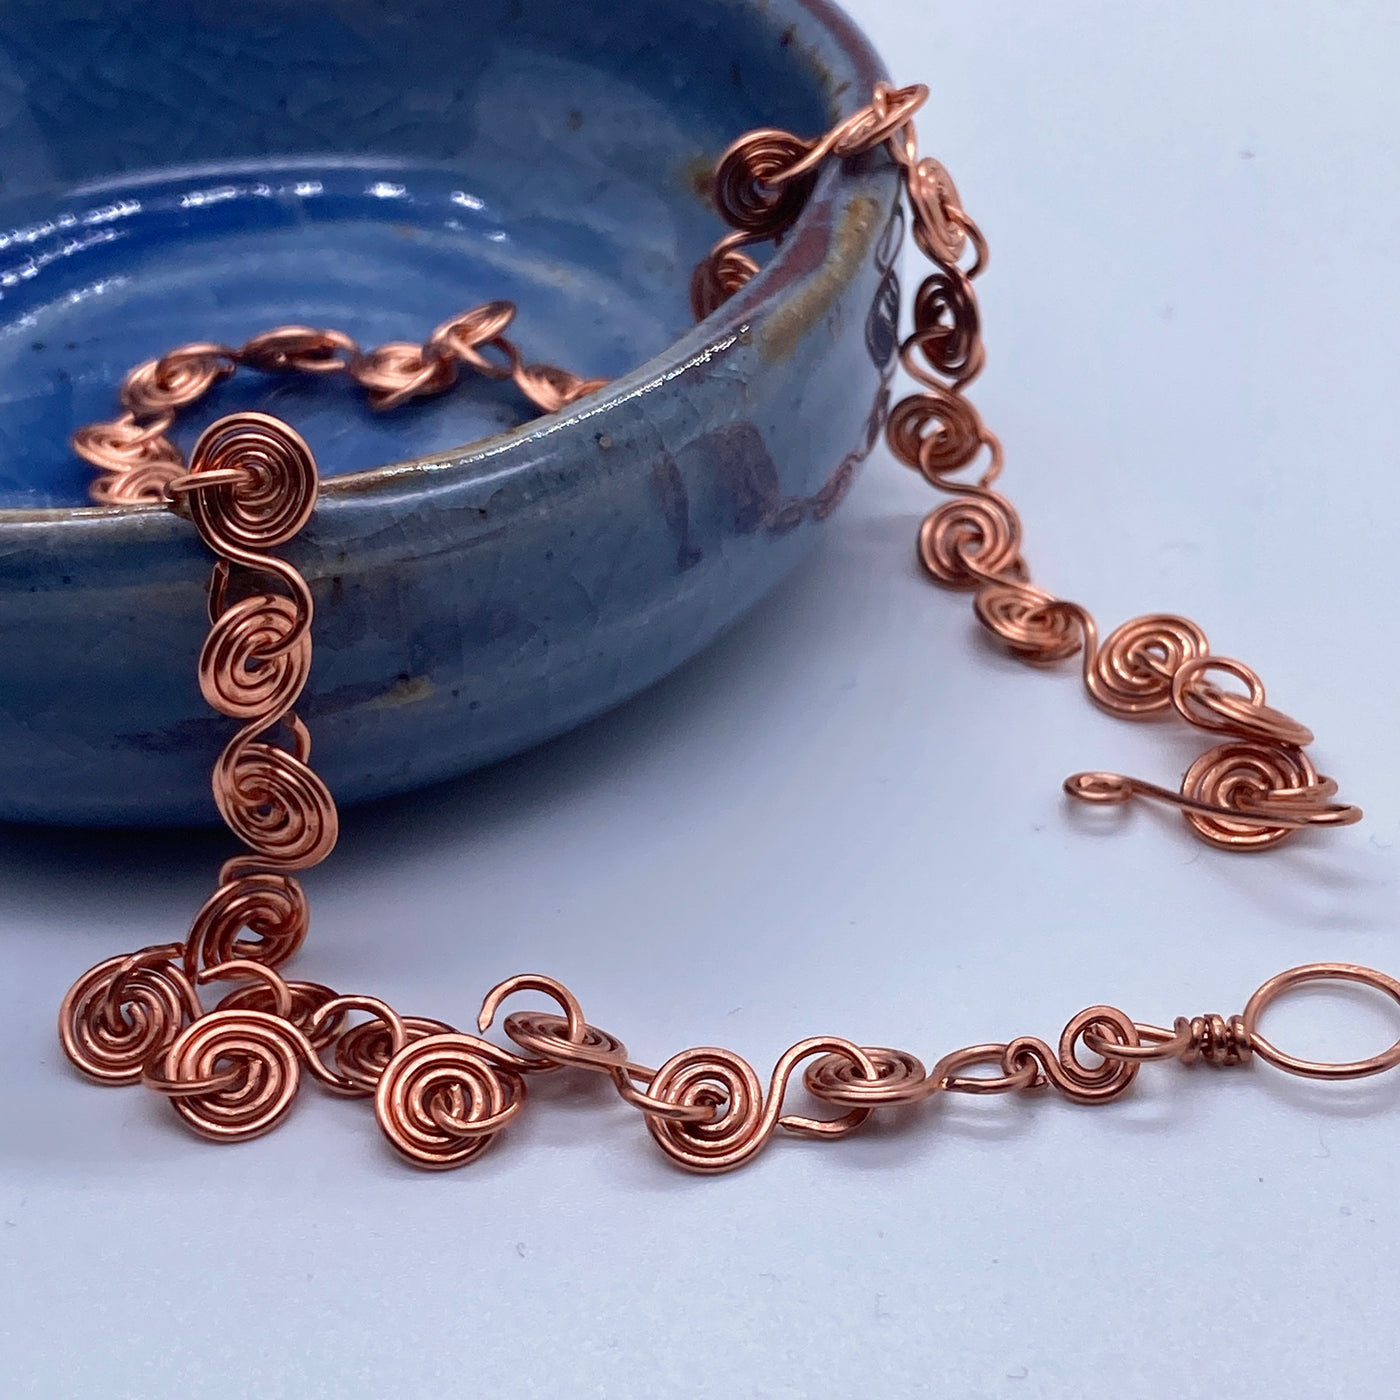 Copper spirals necklace.